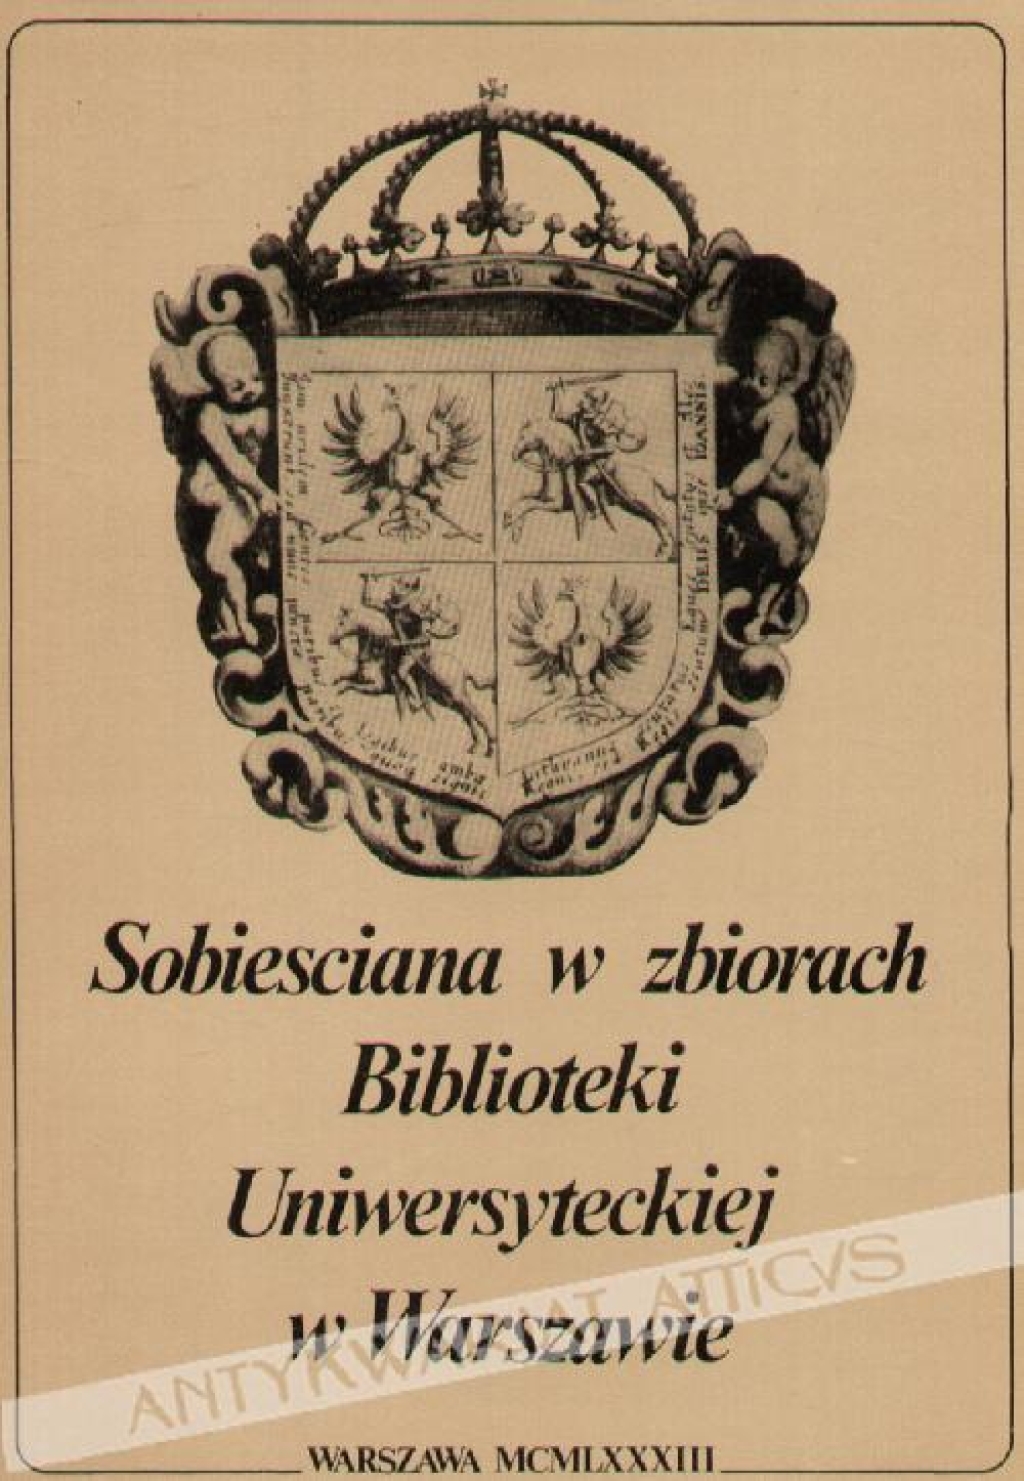 Sobiesciana w zbiorach Biblioteki Uniwersyteckiej w Warszawie. Katalog wystawy